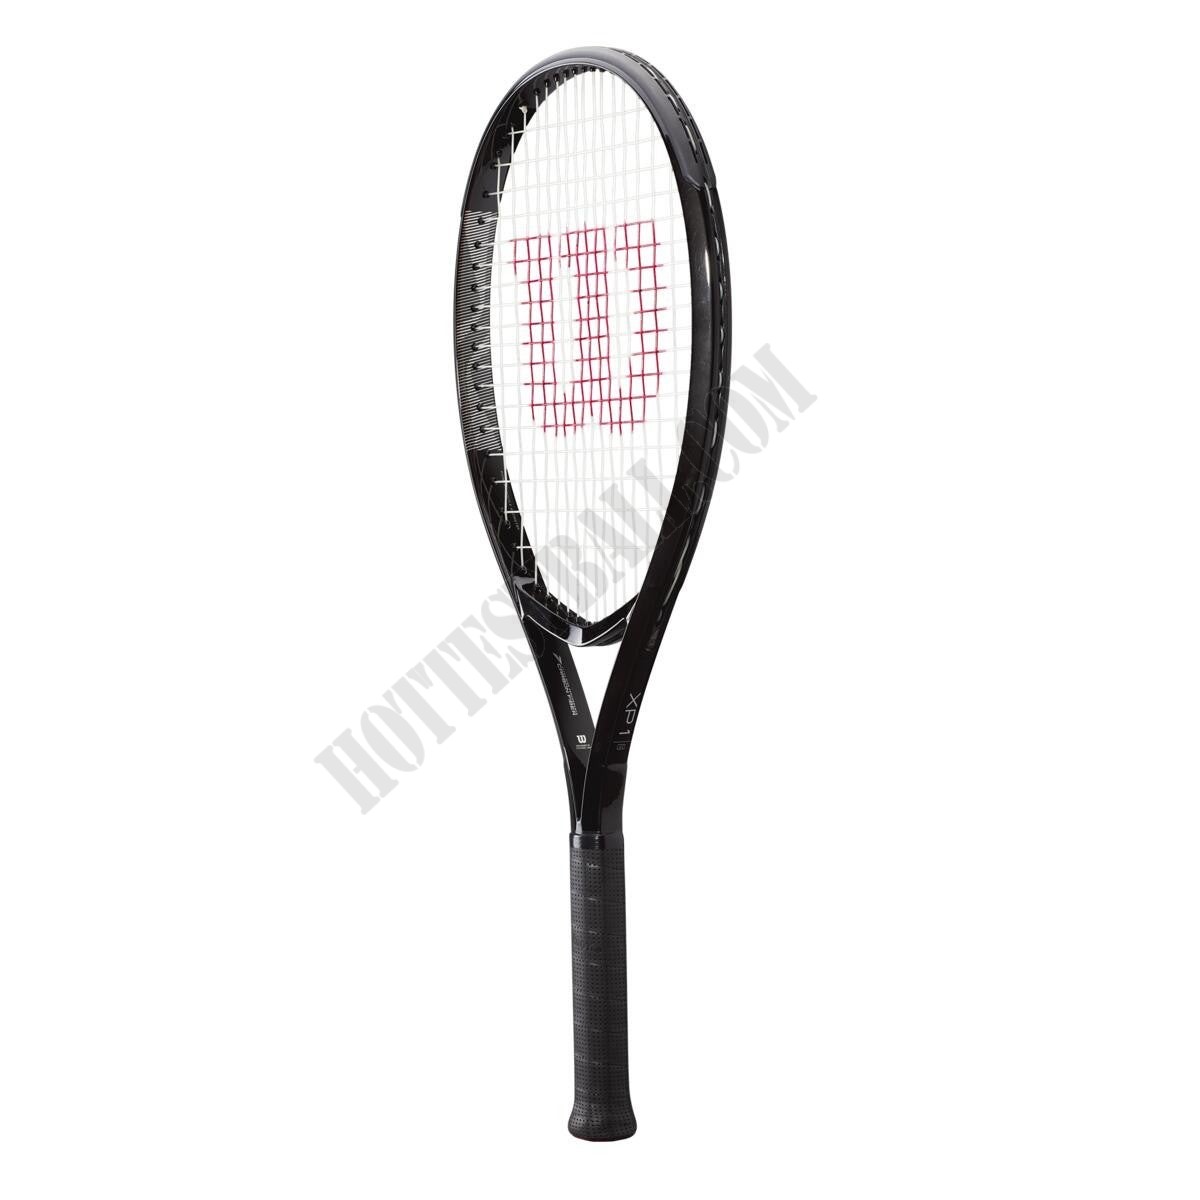 XP 1 Tennis Racket - Wilson Discount Store - -2